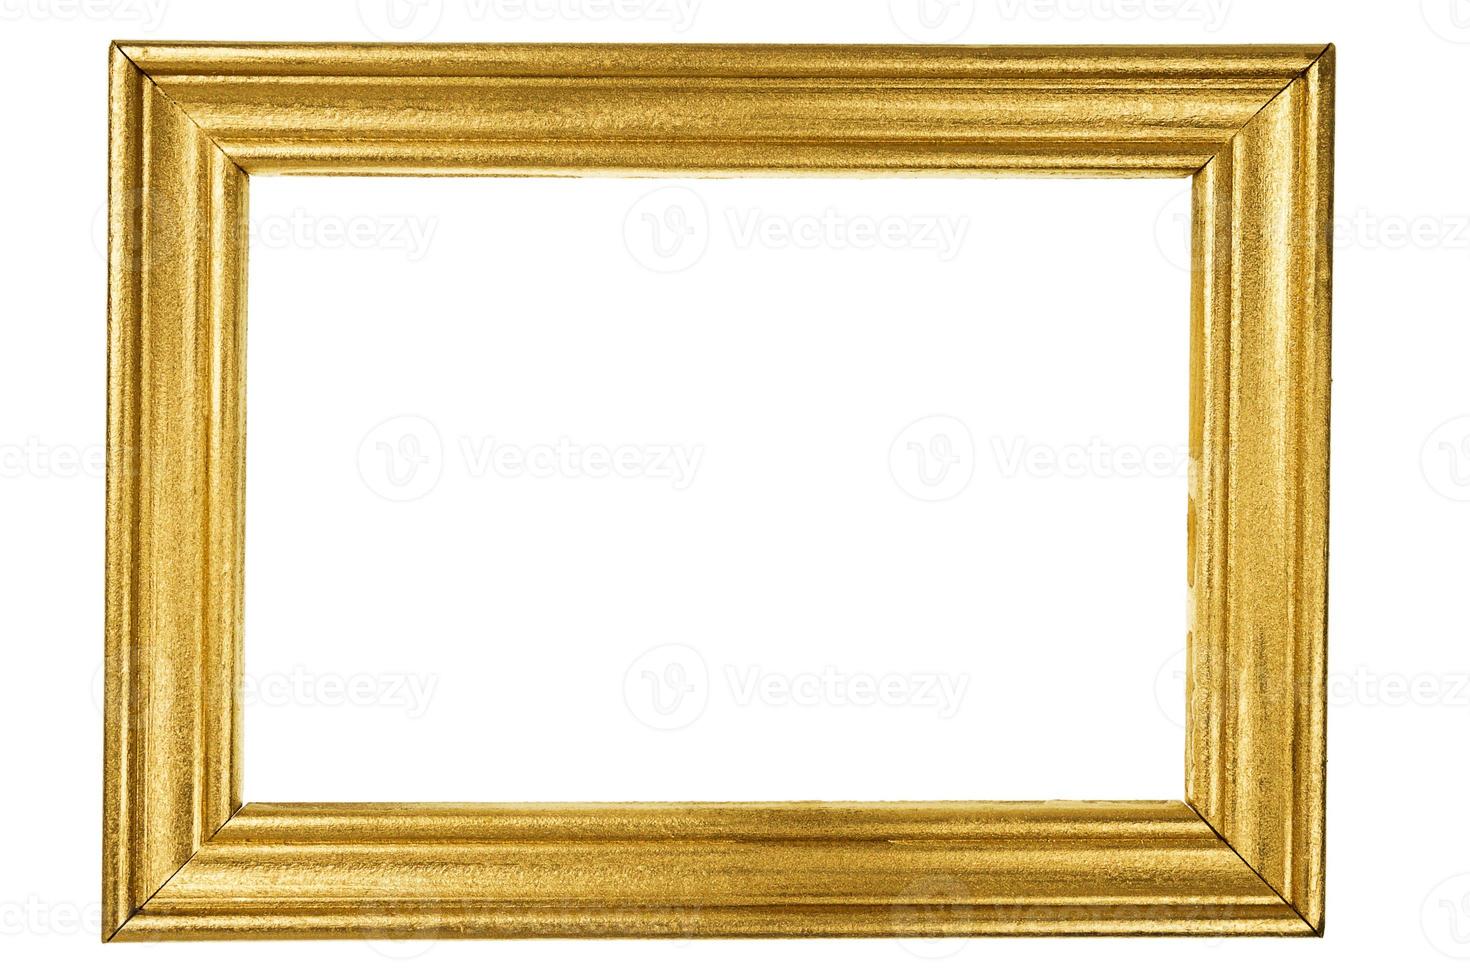 moldura de madeira pintada com ouro foto